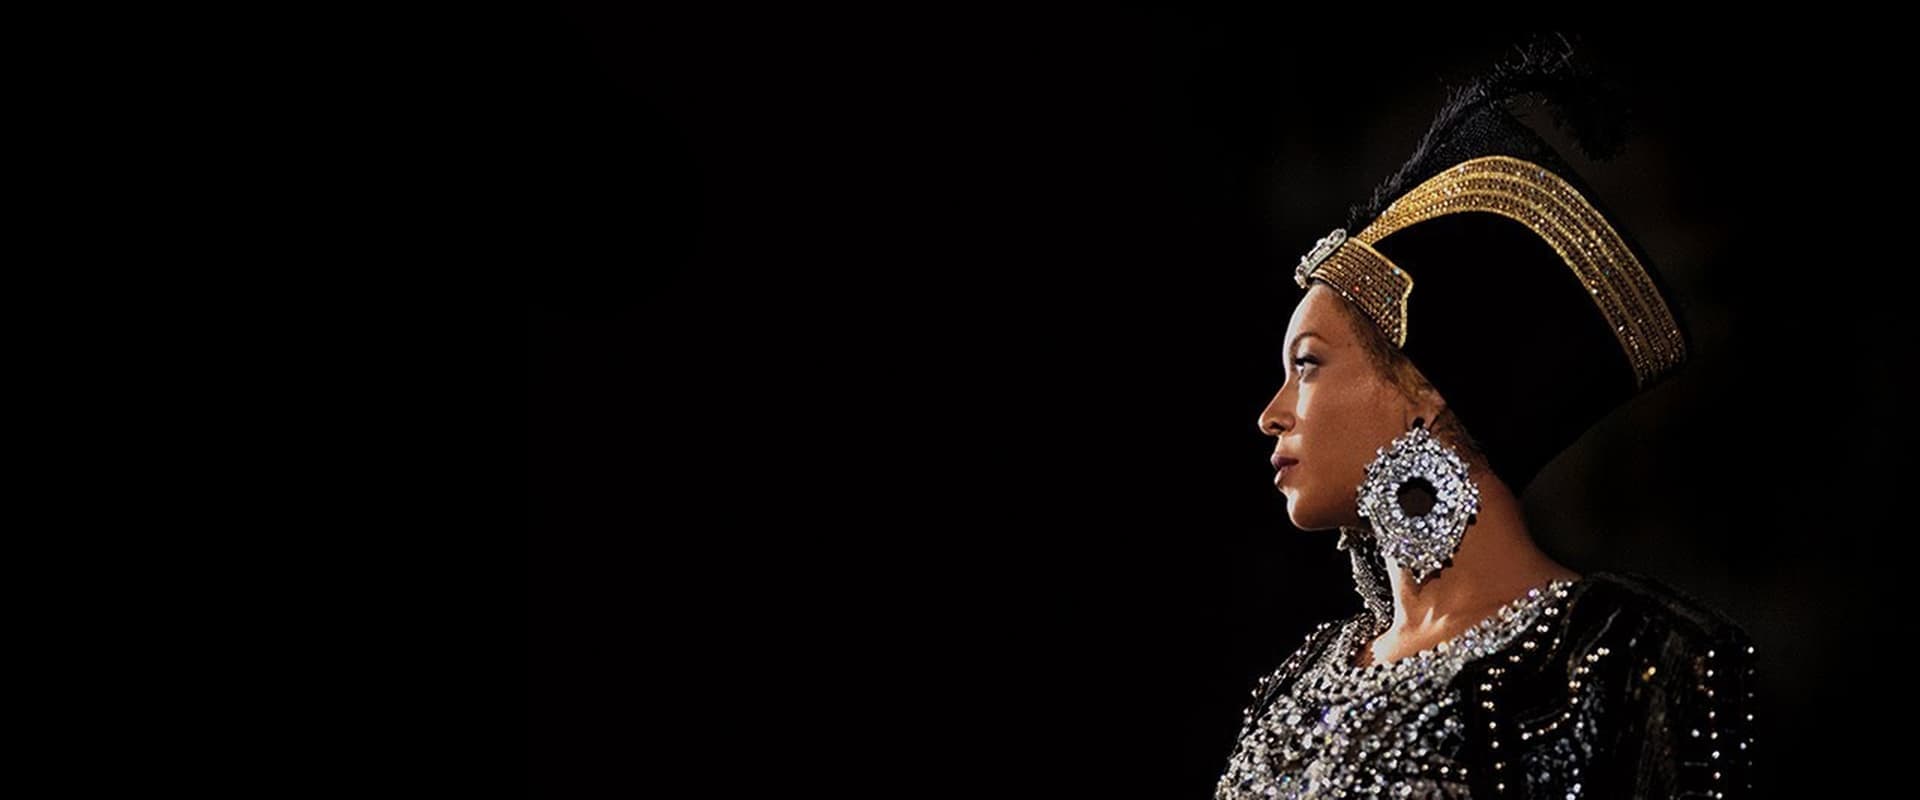 Homecoming: A Film by Beyoncé